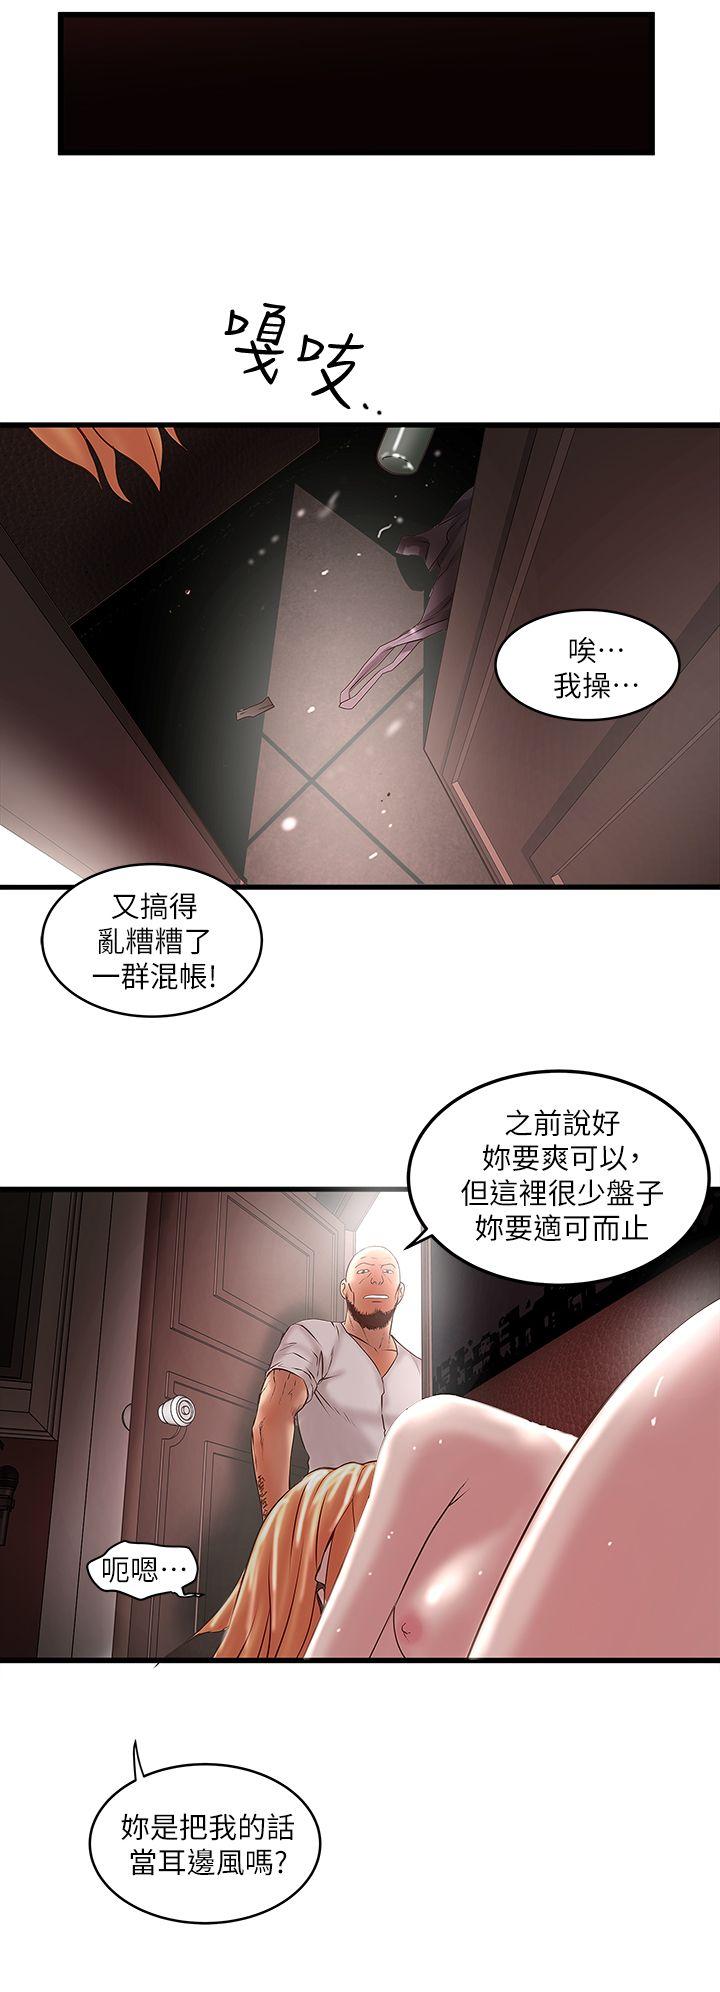 韩国污漫画 下女,初希 第8话-俊皓第一次花天酒地 37